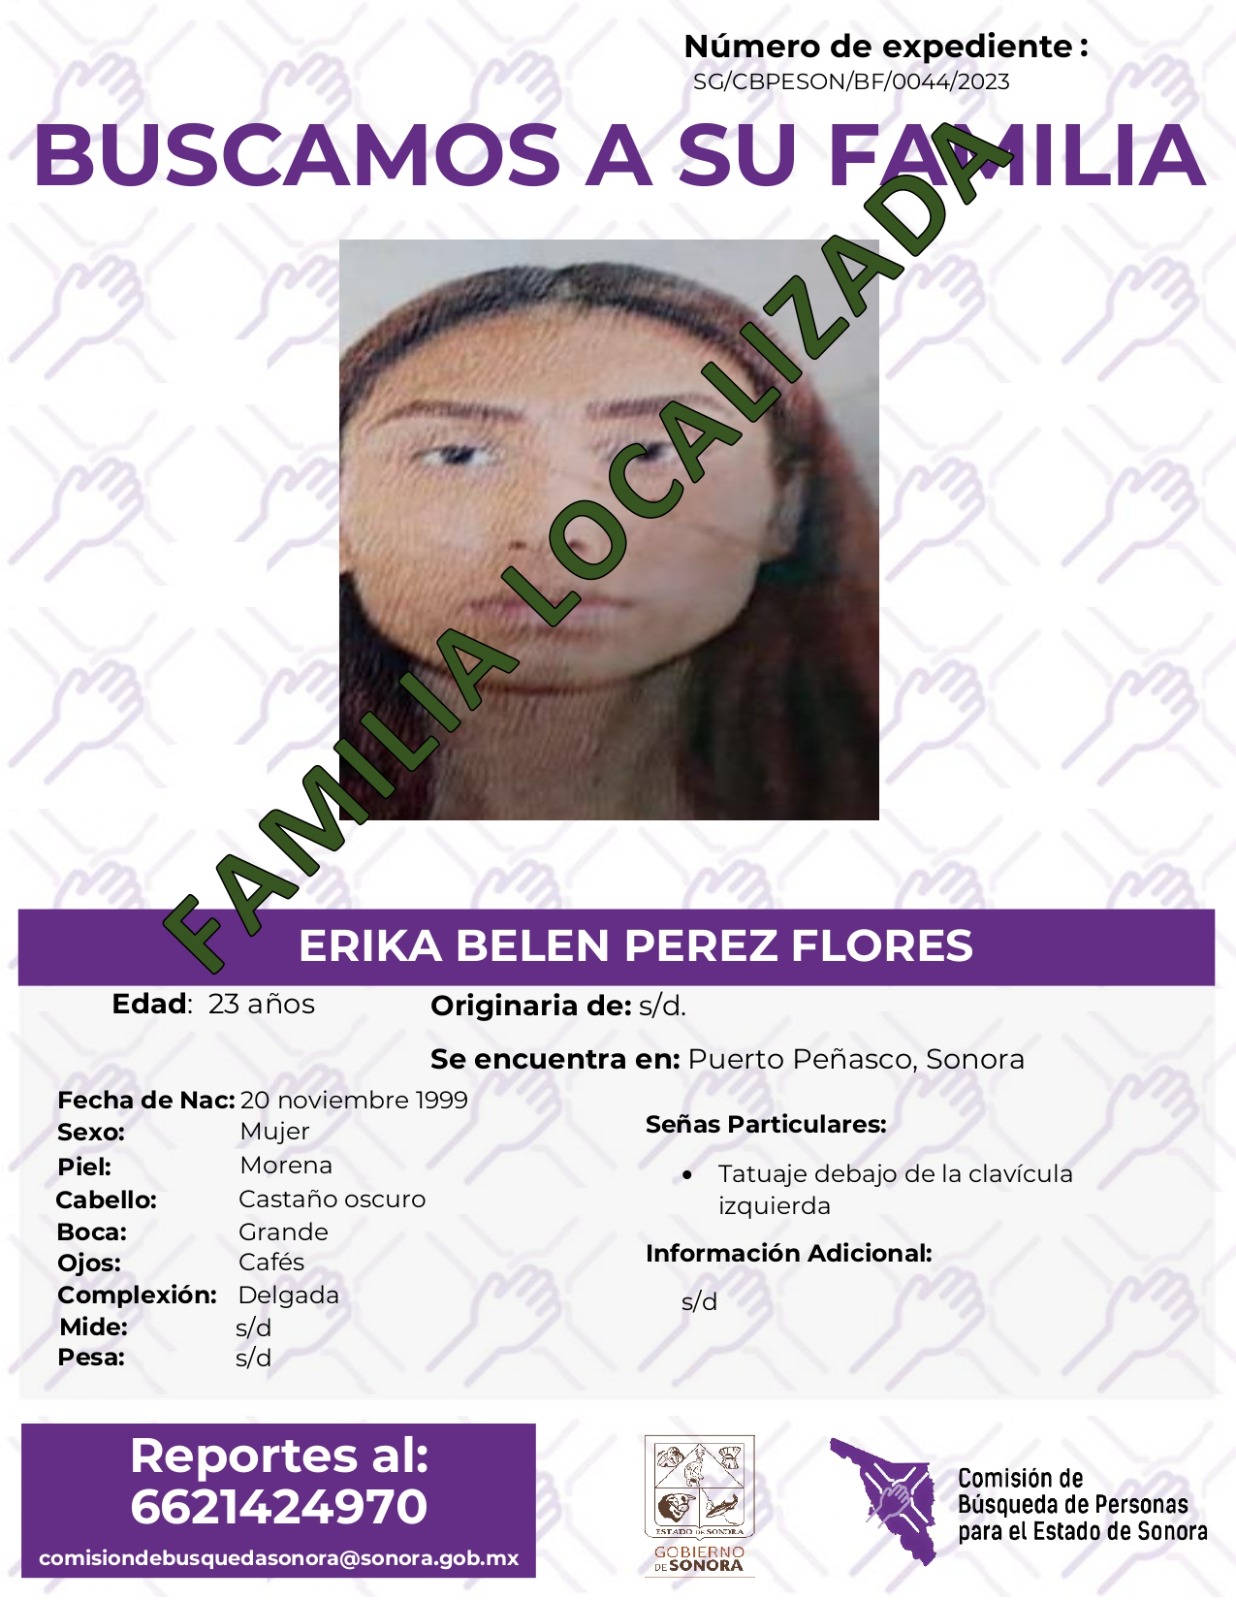 ERIKA BELEN PEREZ FLORES - FAMILIA LOCALIZADA